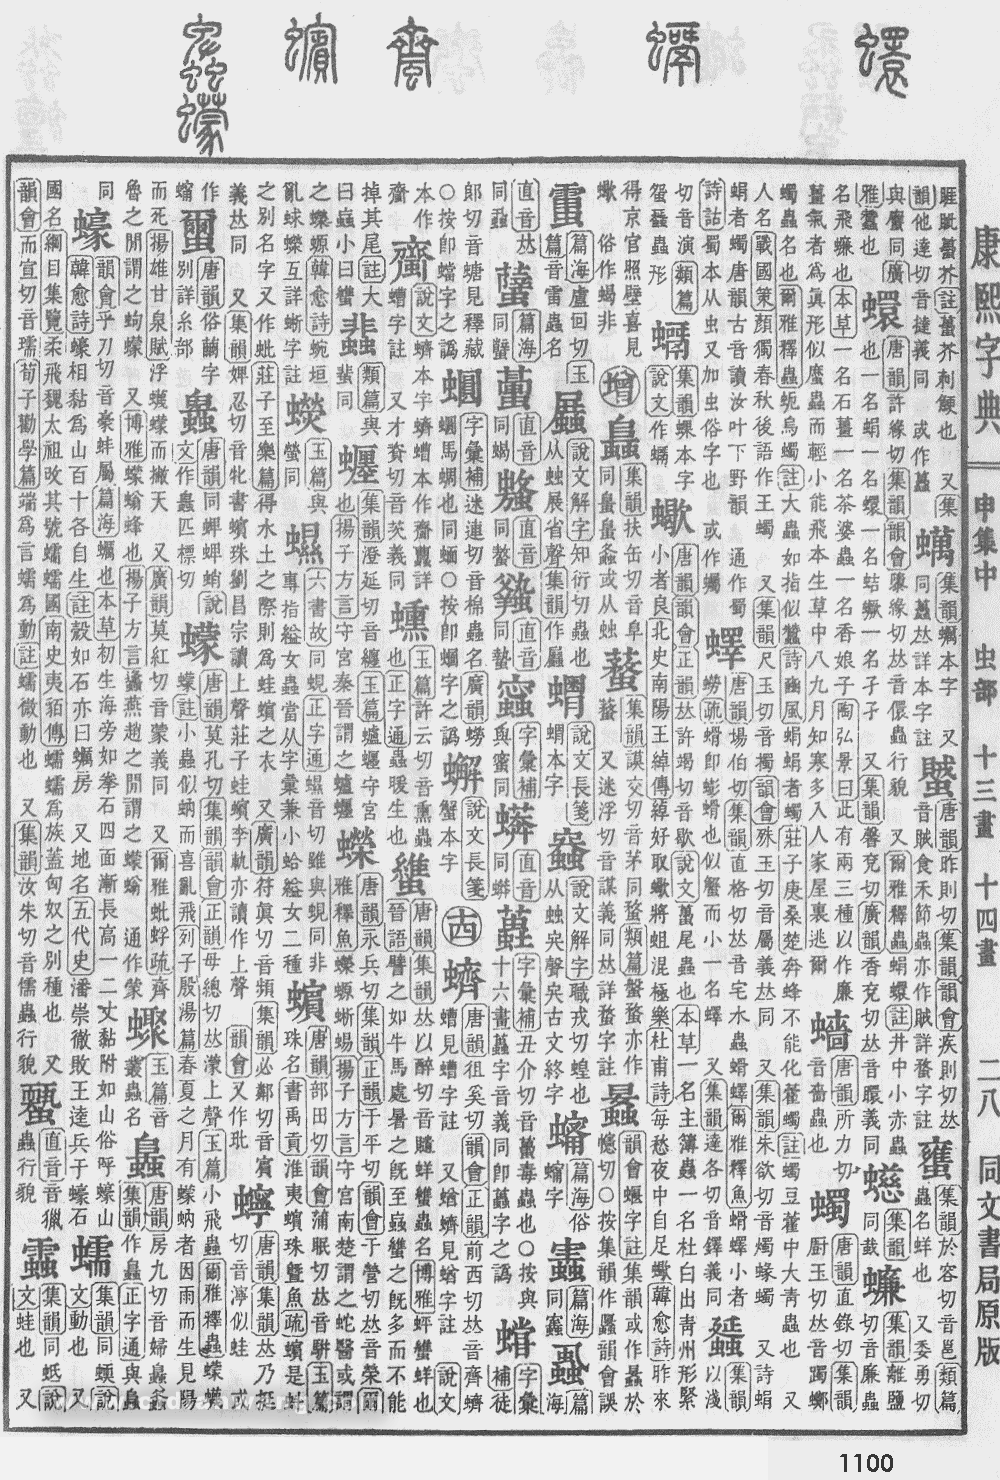 康熙字典掃描版第1100頁